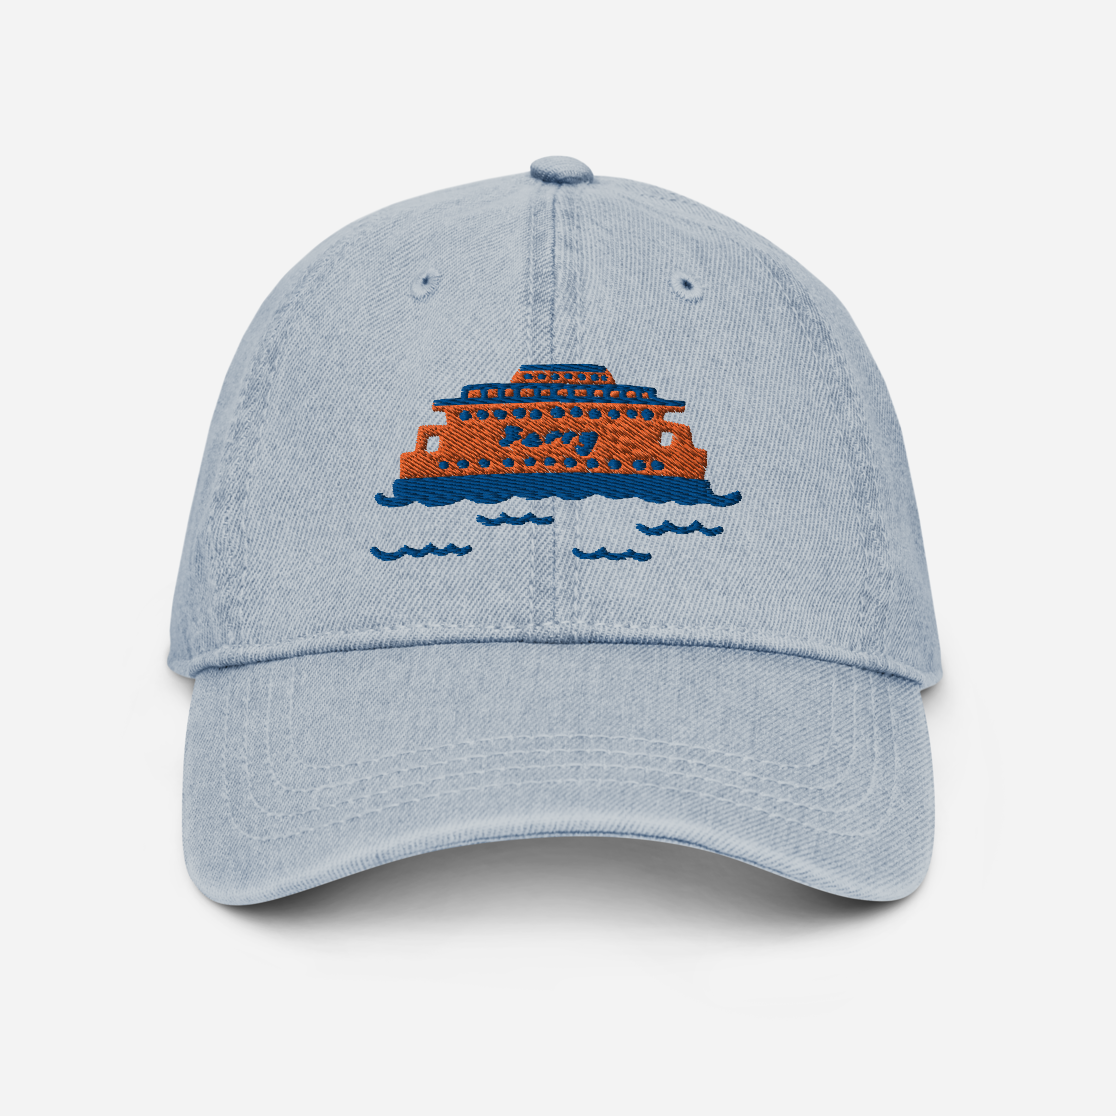 Staten Island Ferry Embroidered Denim Hat - The Crowd Went Wild